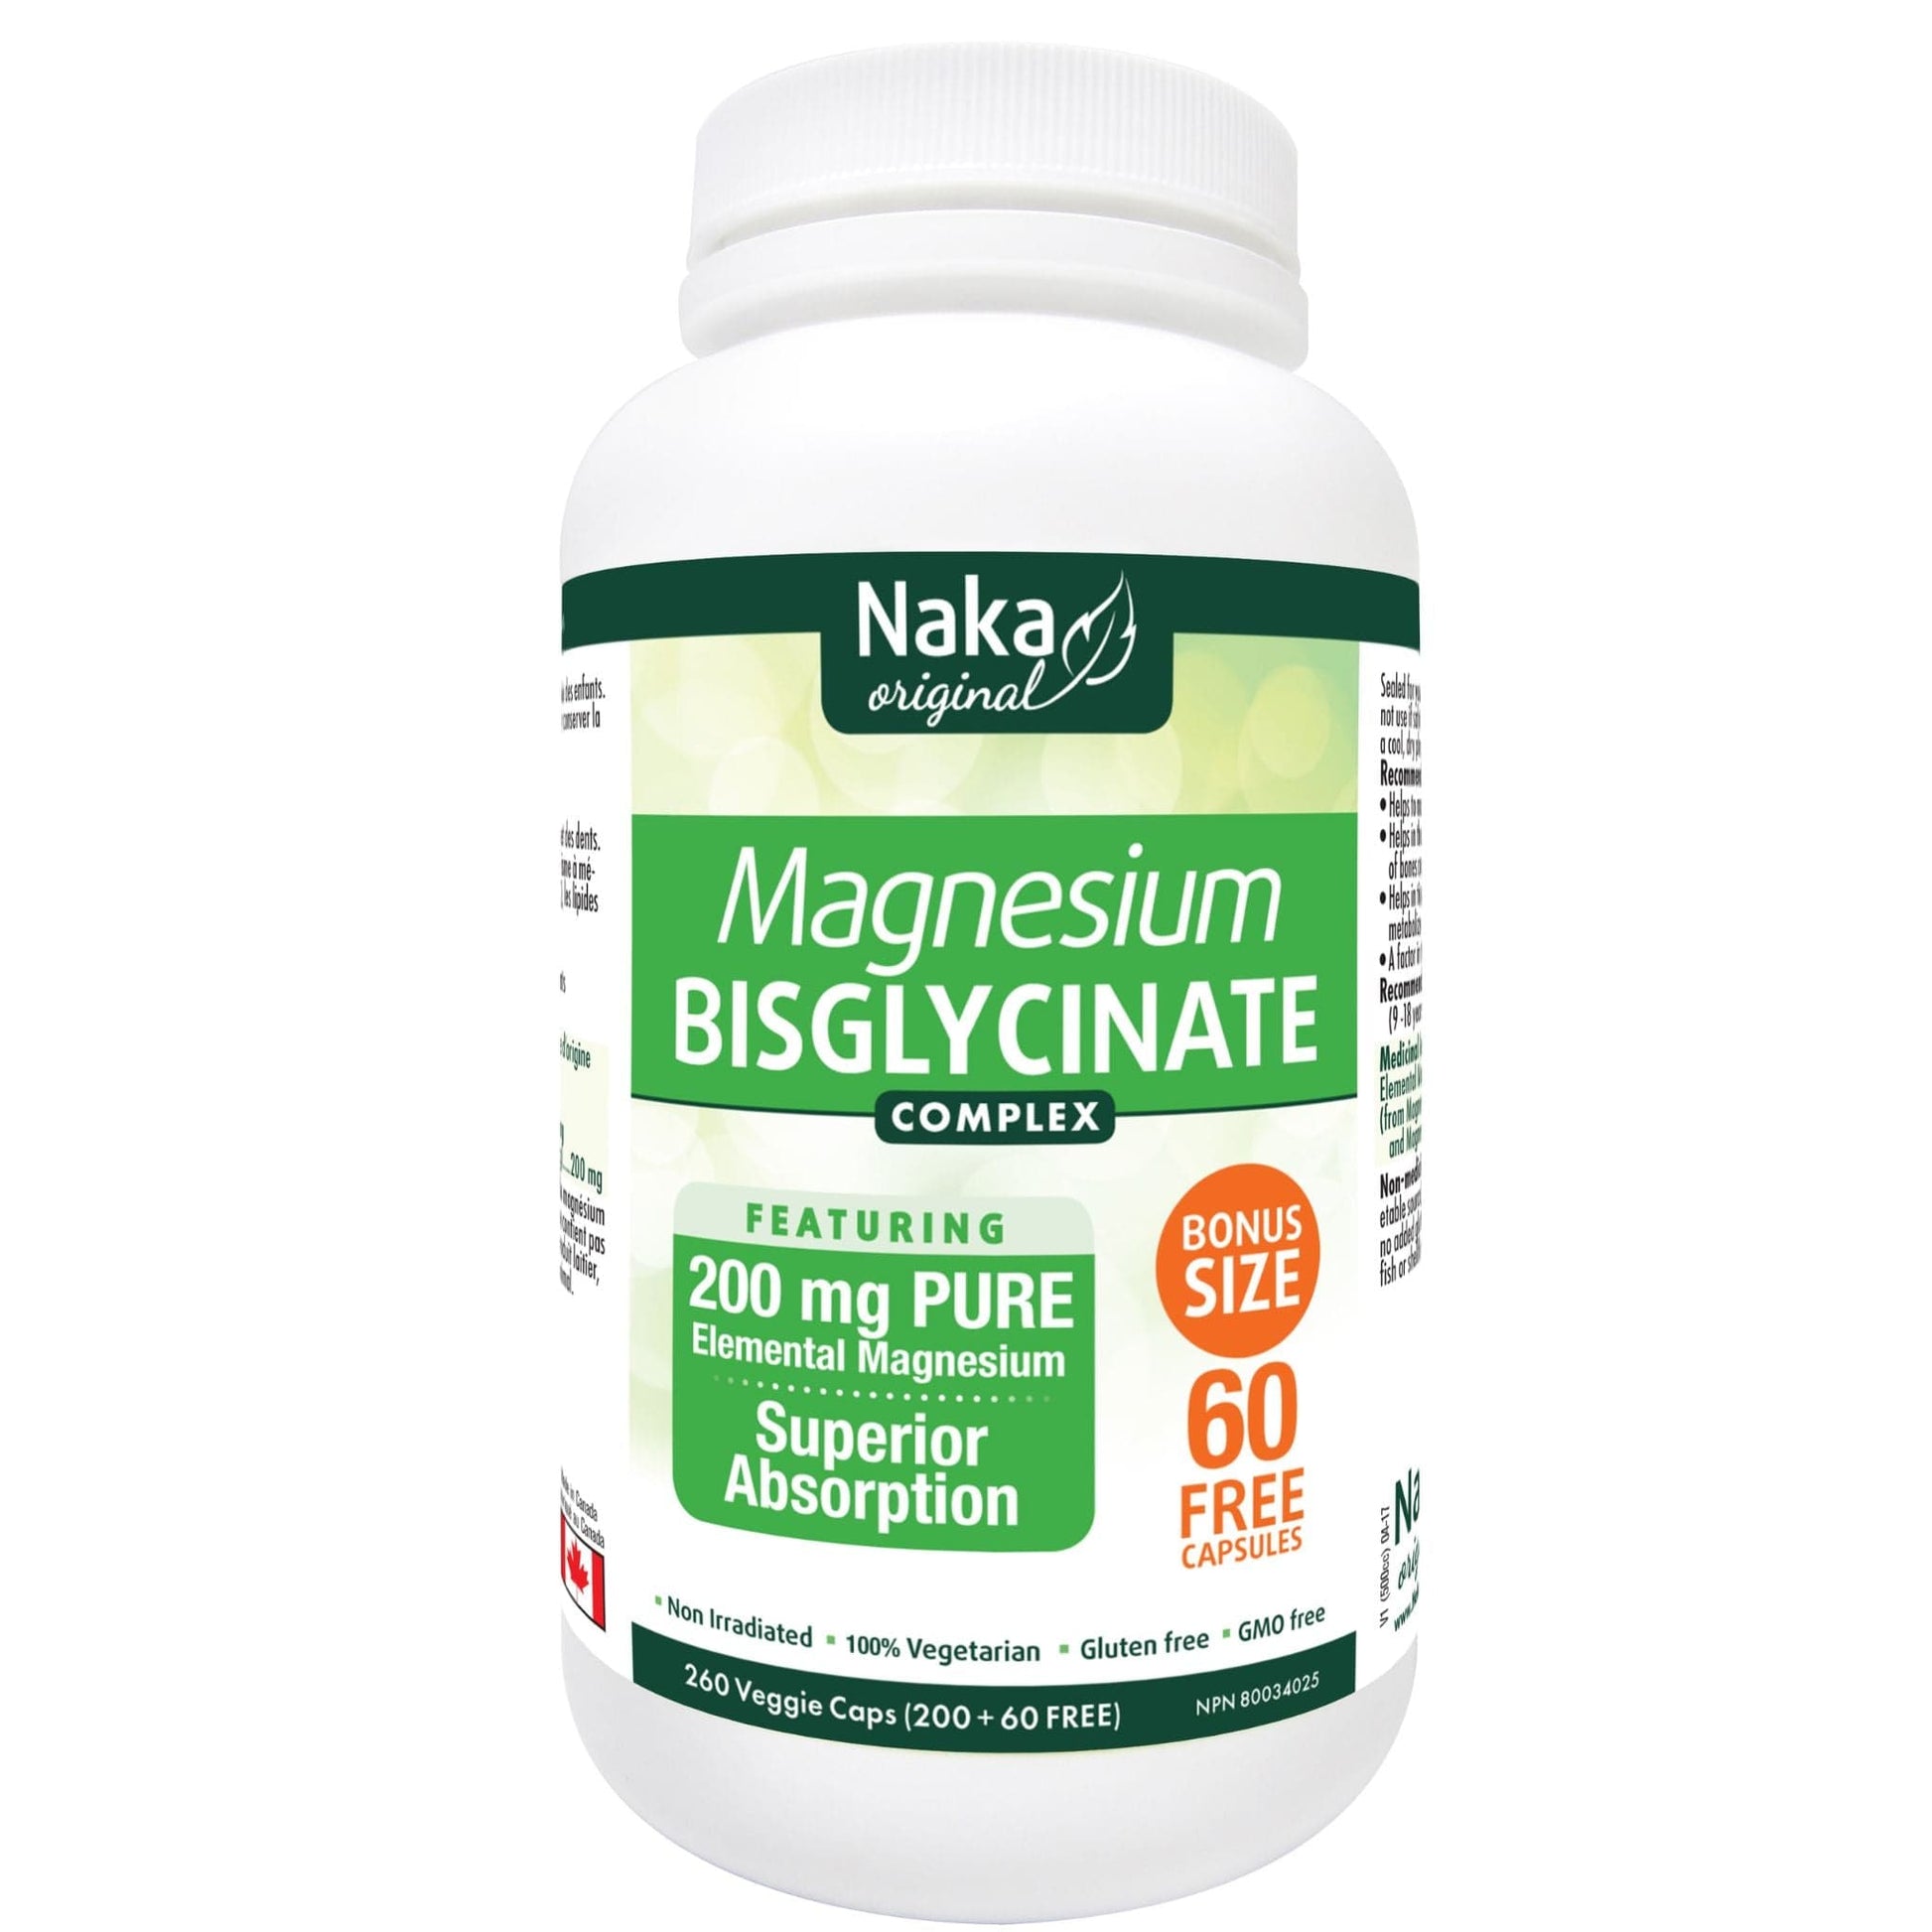 naka-magnesium-bisglycinate-complex-260caps